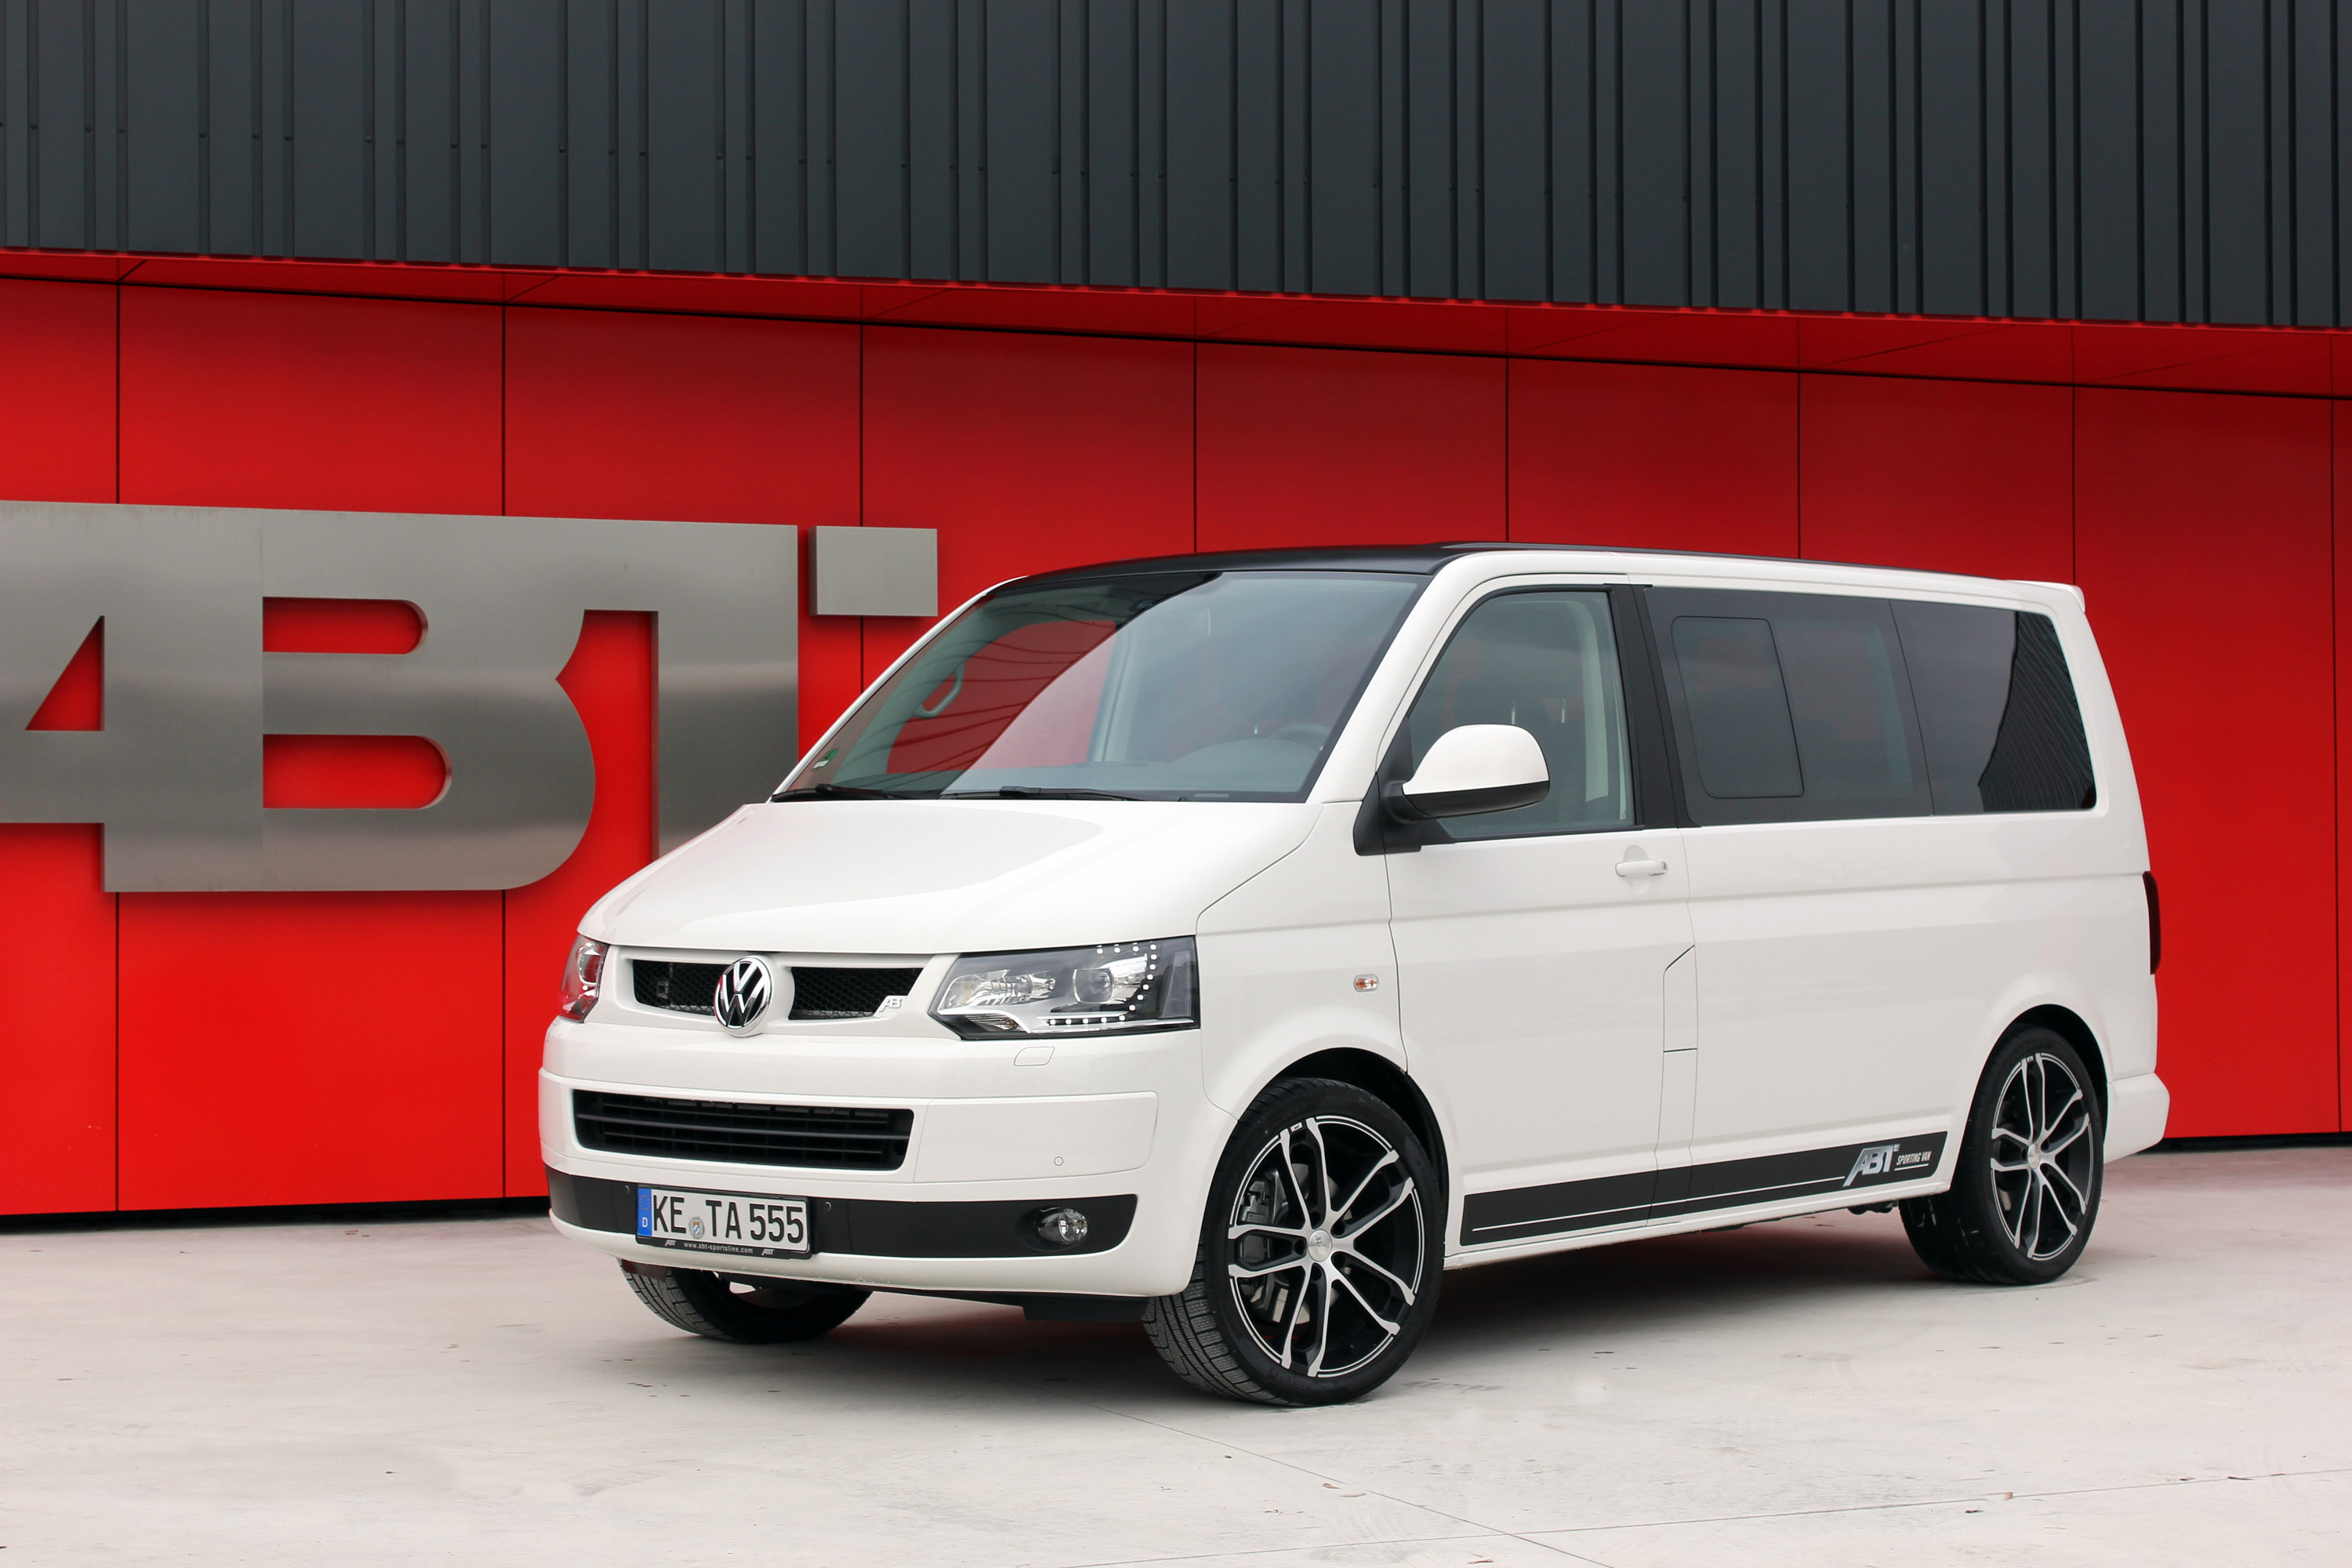 2015 ABT Volkswagen T5 Sporting Van HD Pictures